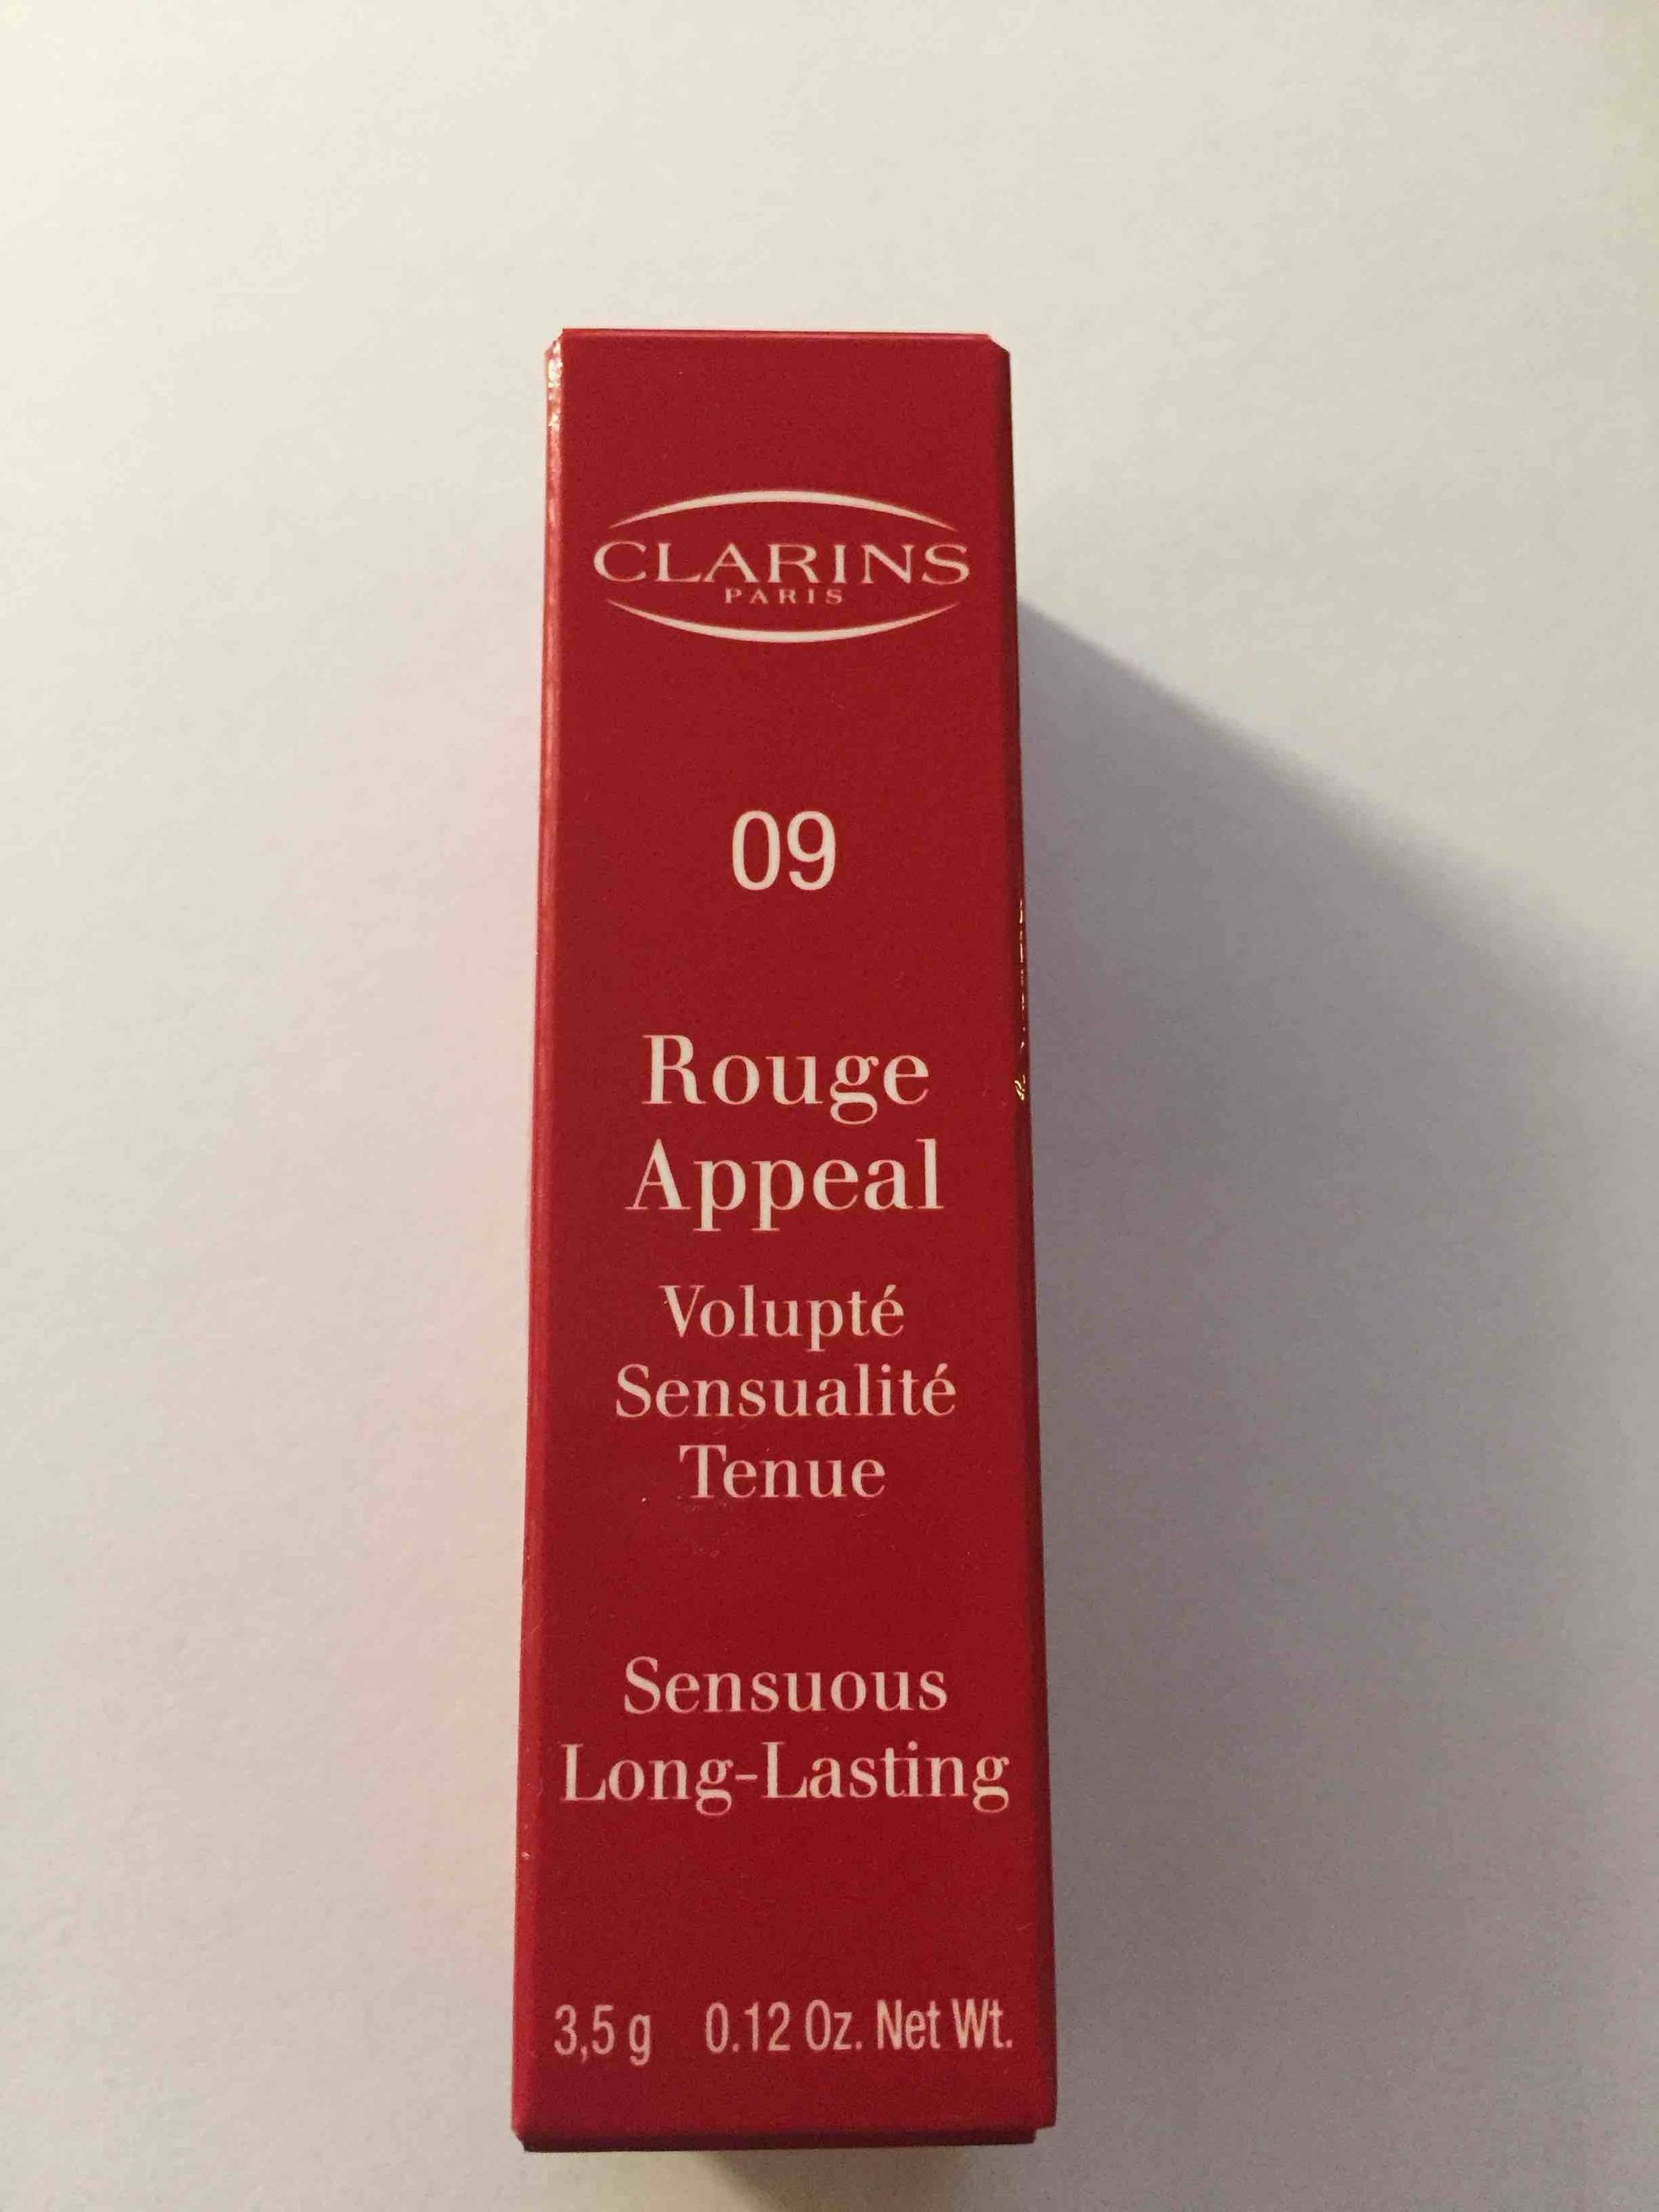 CLARINS - 09 Rouge appeal - Volupté sensualité tenue